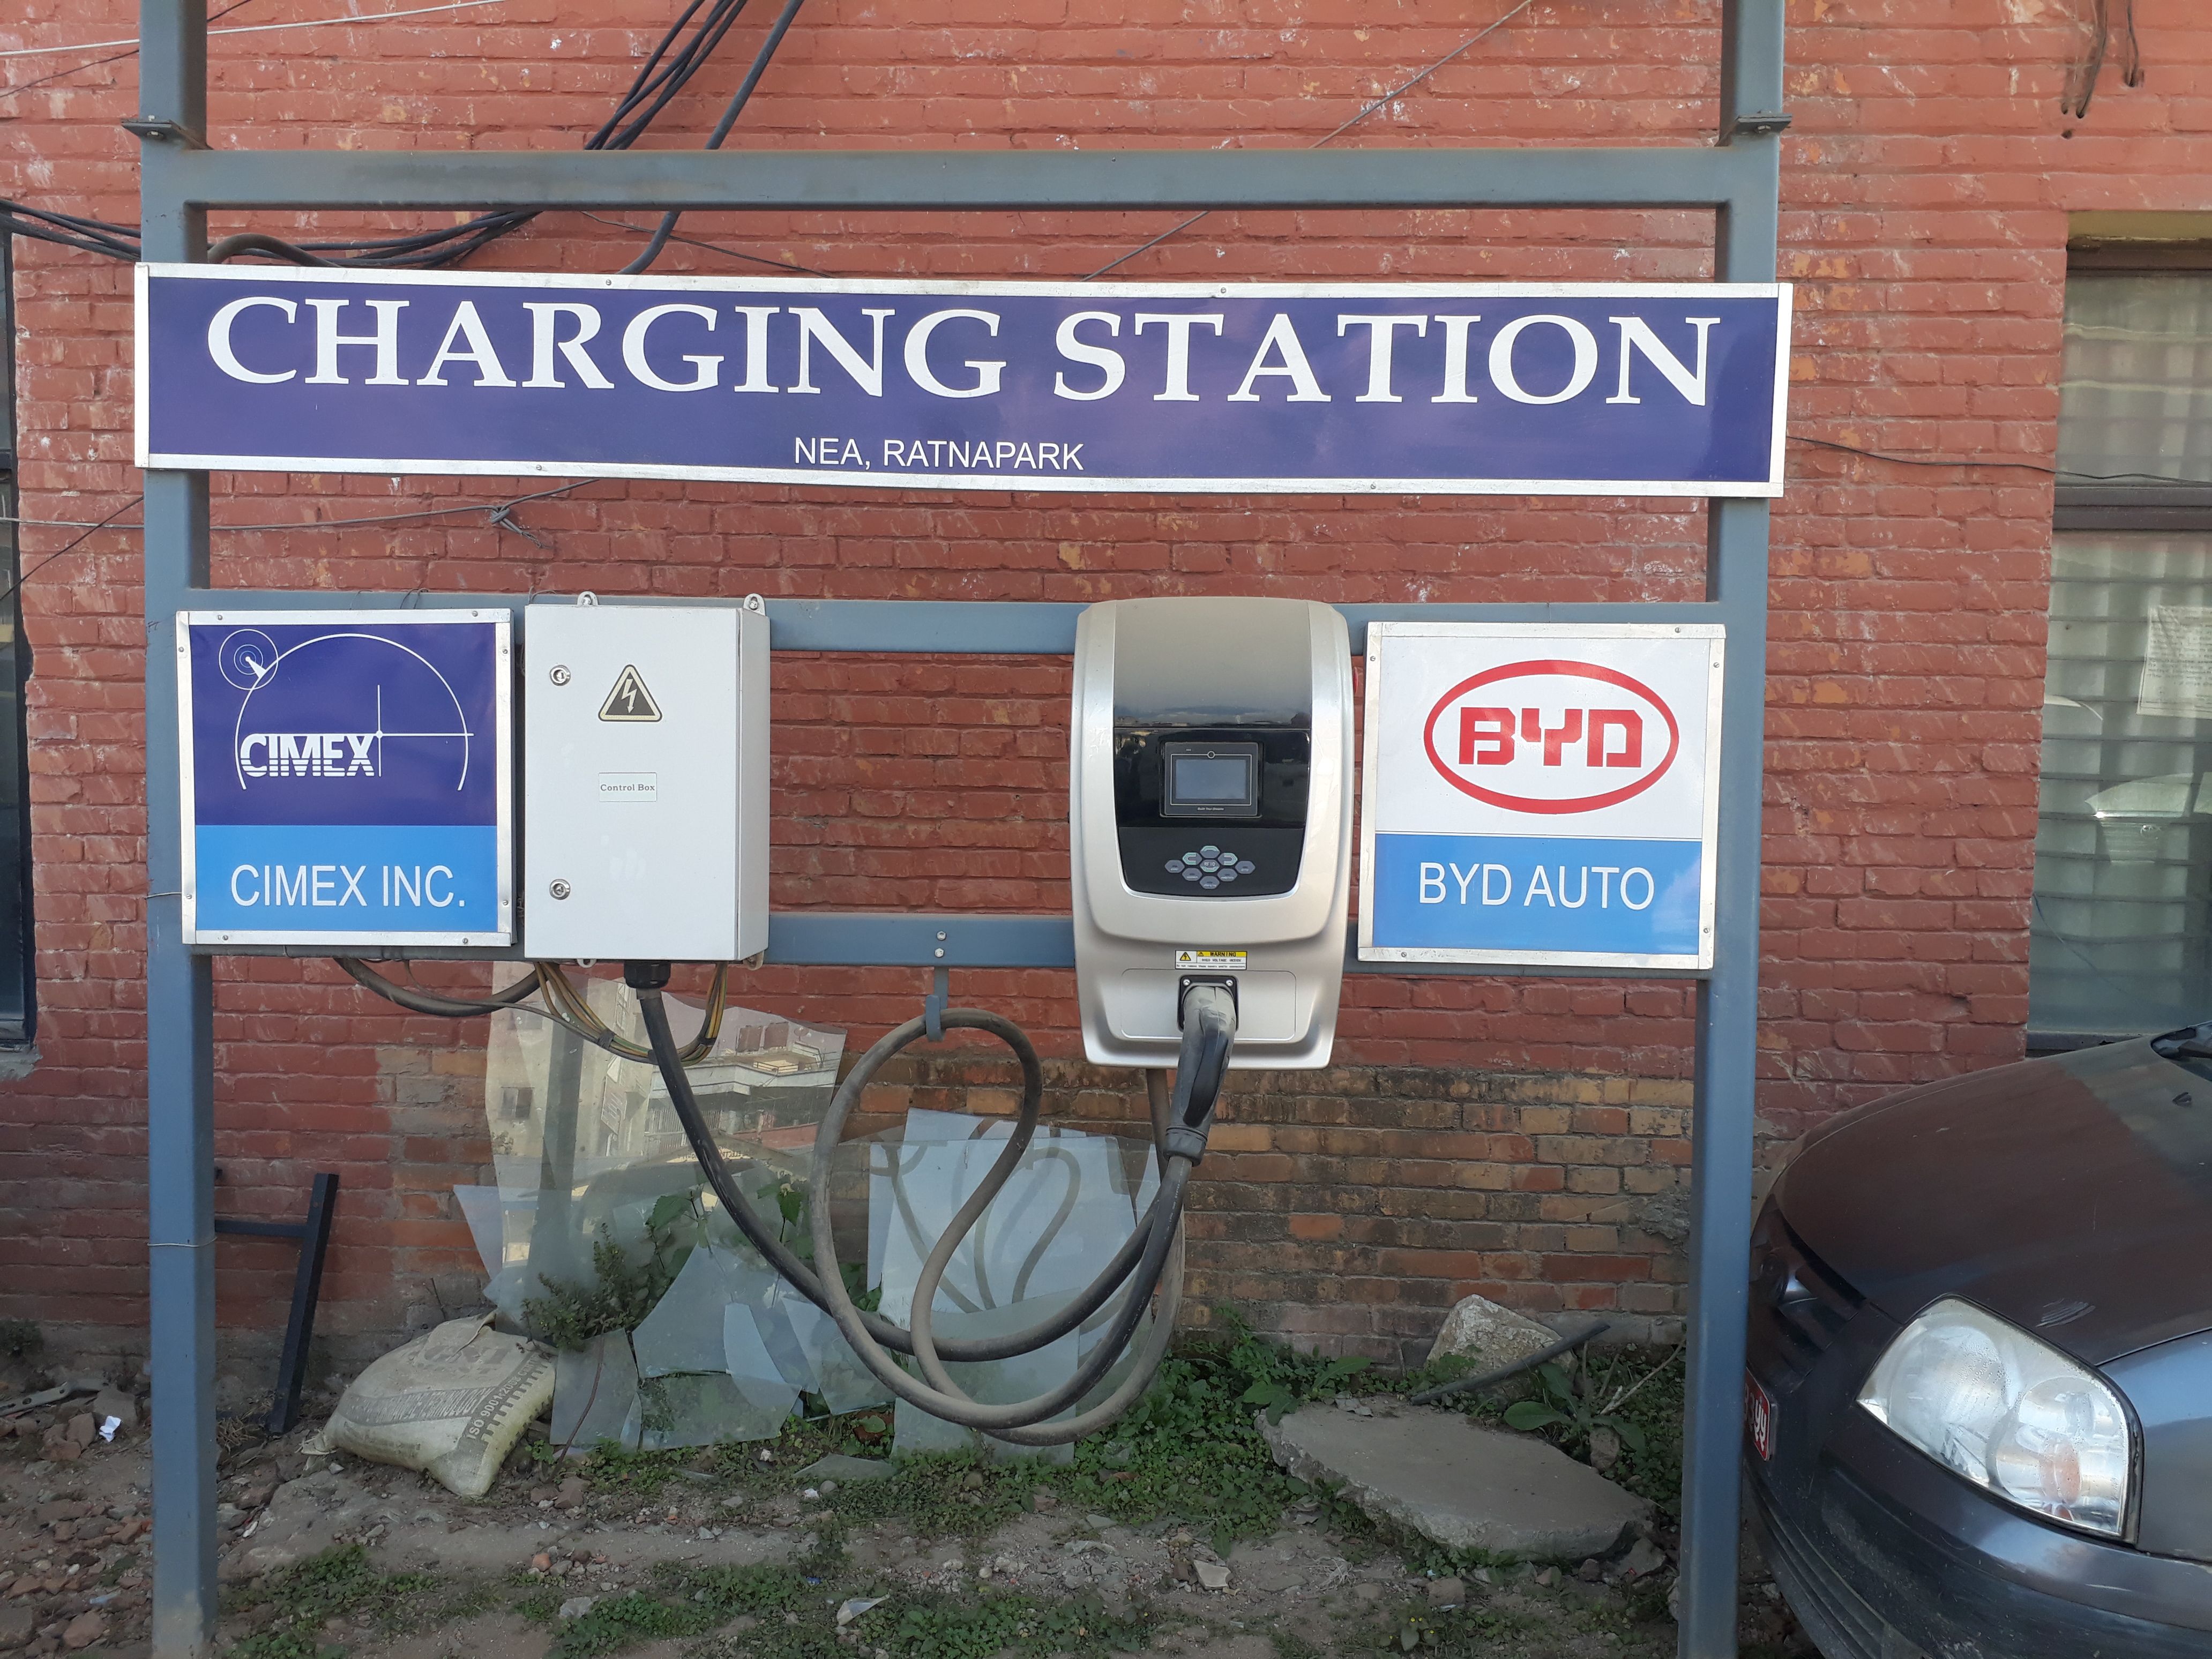 बिजुली गाडीका लागि पाँच चार्जिङ स्टेशन असारसम्म बनाइने | Safal Khabar